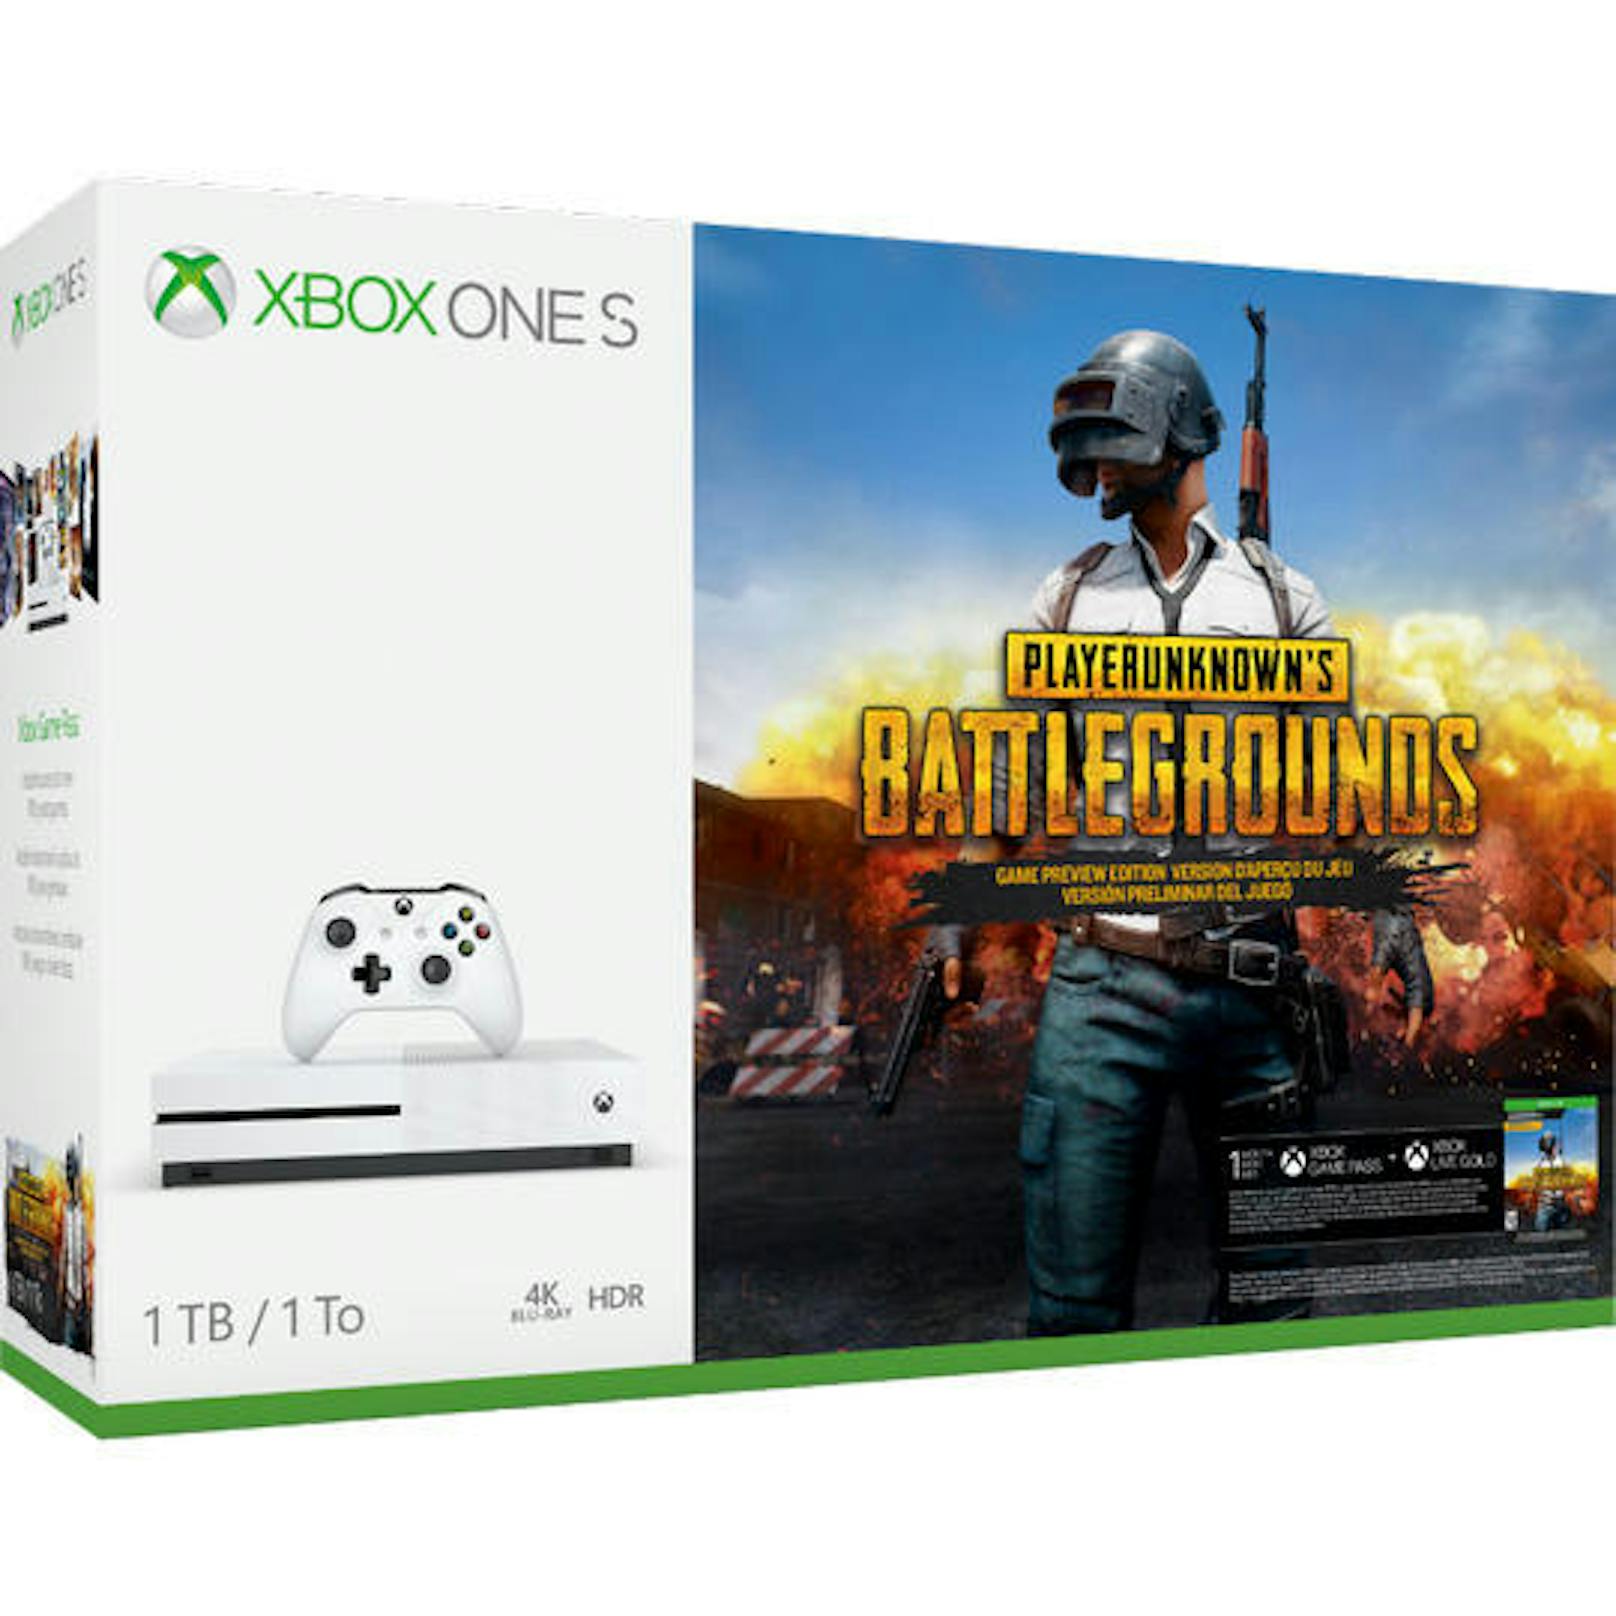 <b>06. Februar 2018:</b> Über vier Millionen Spieler auf Xbox One in Playerunknown's Battlegrounds feiert Xbox mit dem Xbox One S Playerunknown's Battlegrounds Bundle. Dieses ist ab sofort zum Vorverkauf für 299,99 Euro verfügbar. Es bietet eine Xbox One S mit 1TB Festplatte und einem Xbox Wireless Controller, eine Game Preview-Version von Playerunknown's Battlegrounds, eine 14-tägige Xbox Live Gold-Mitgliedschaft, eine einmonatige Xbox Game Pass-Mitgliedschaft.